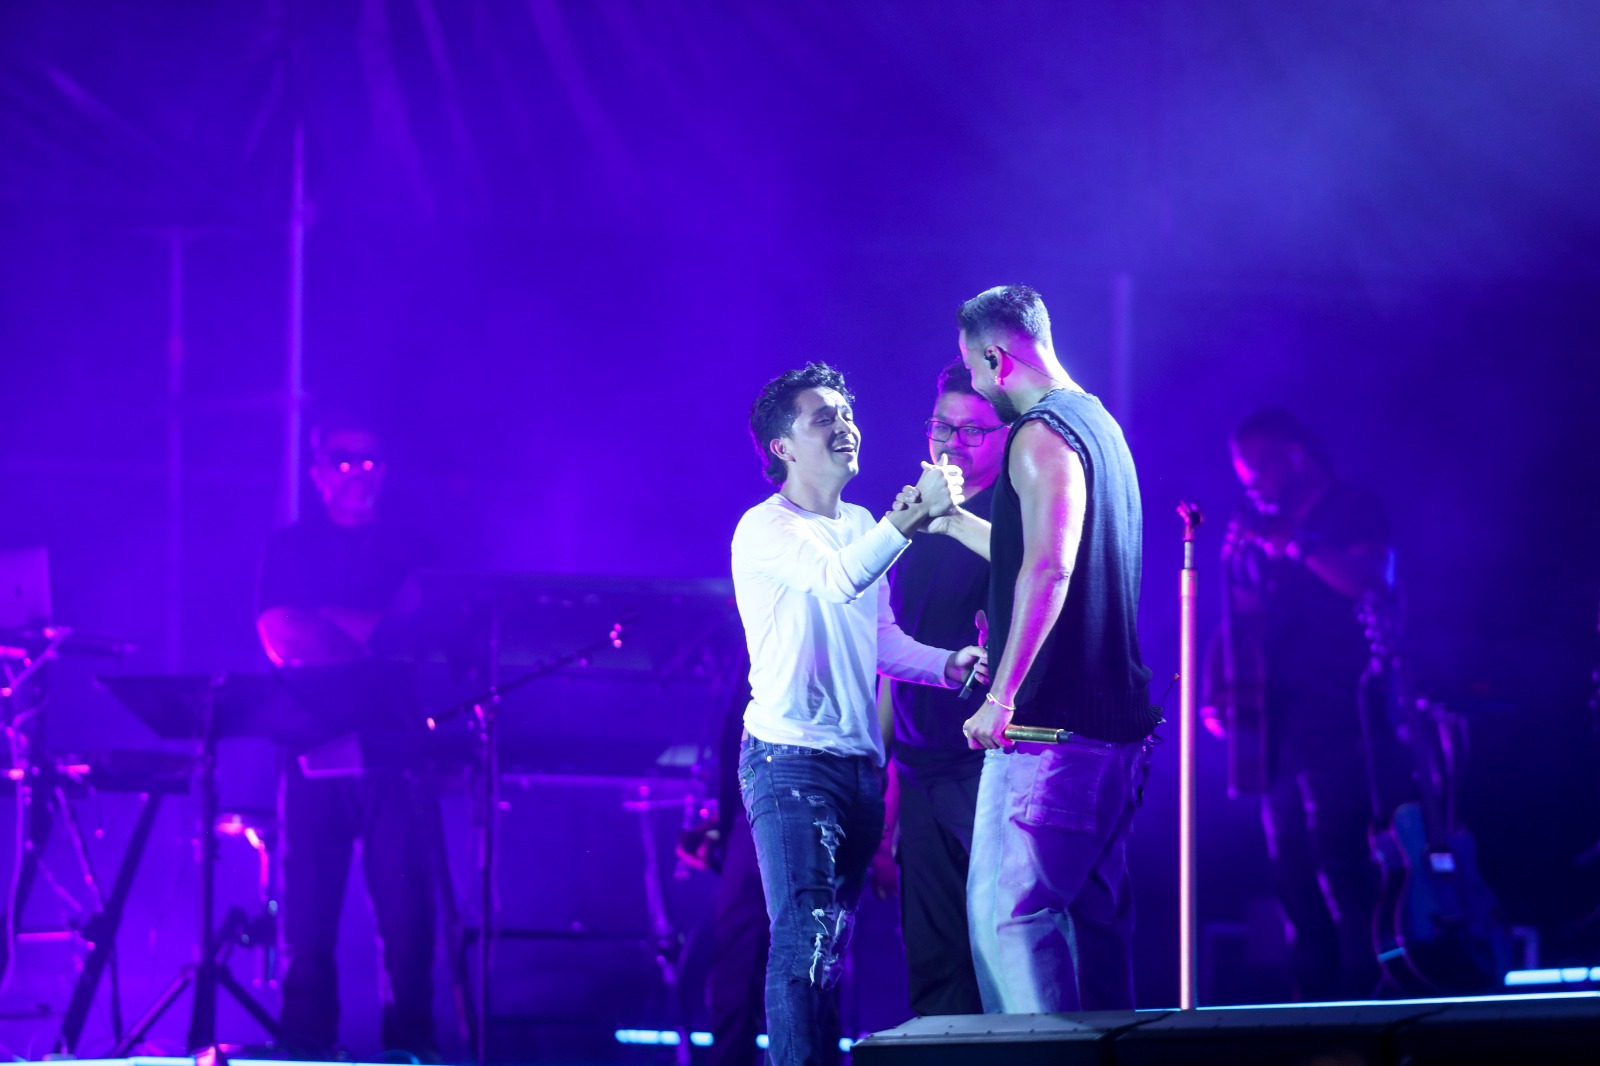 Momento en el que Ángel Álvarez y Romeo Santos cantan a dueto "Ella y yo" sobre el escenario. (Foto Prensa Libre: Keneth Cruz)